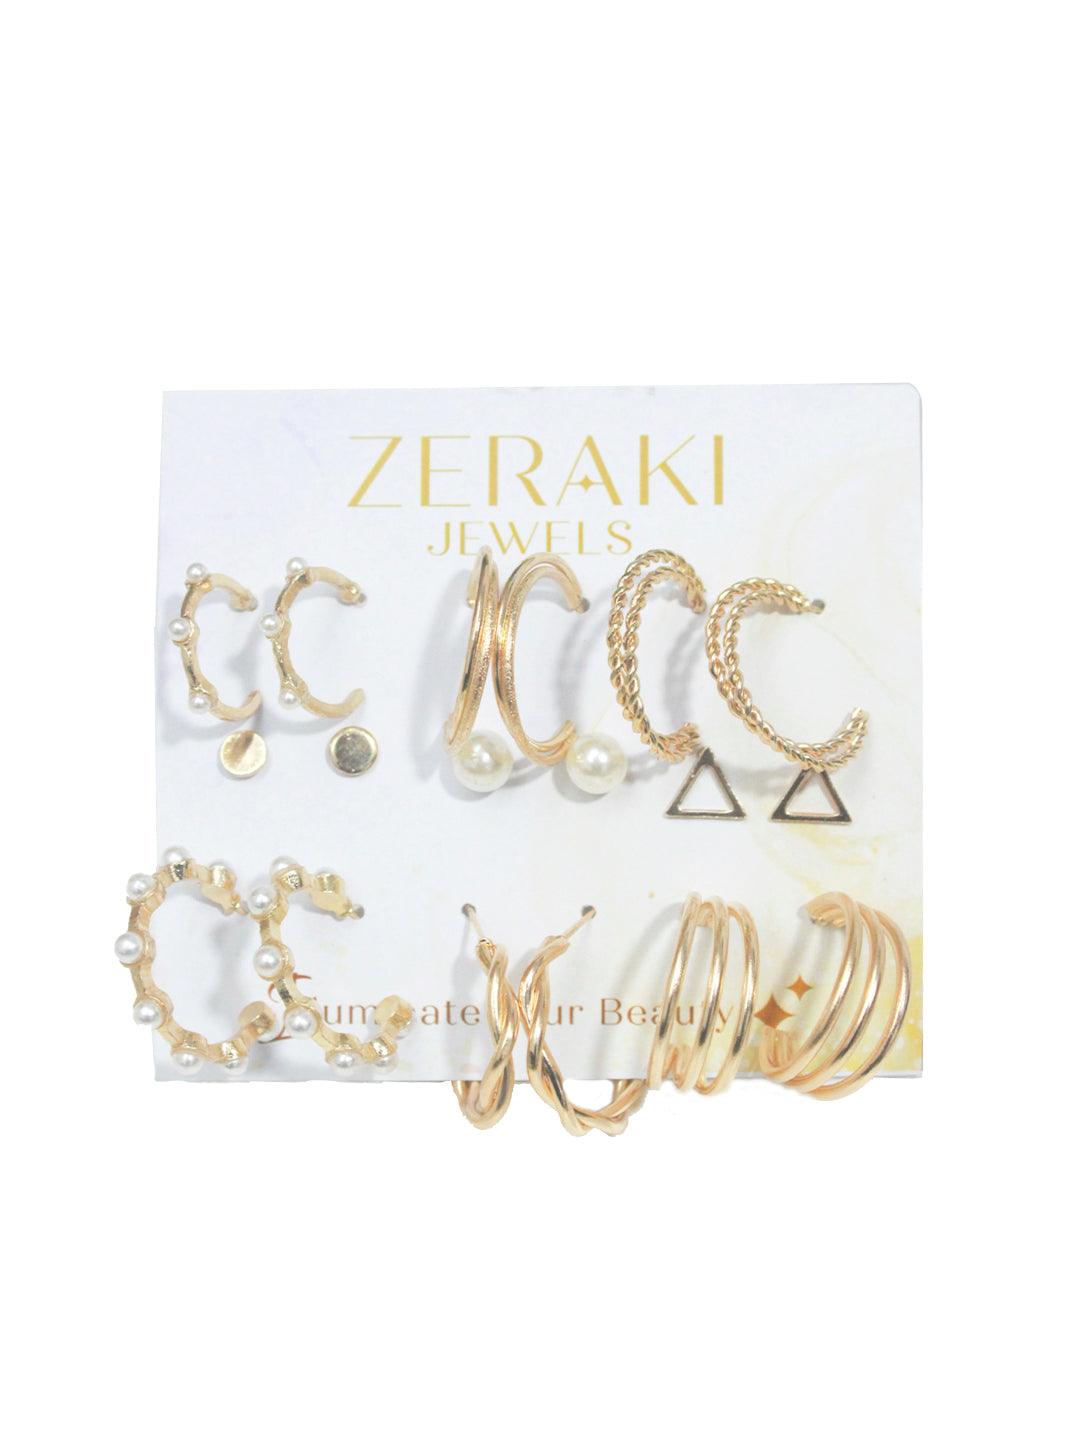 The Sway and Sashay Earring combo - Zeraki Jewels 